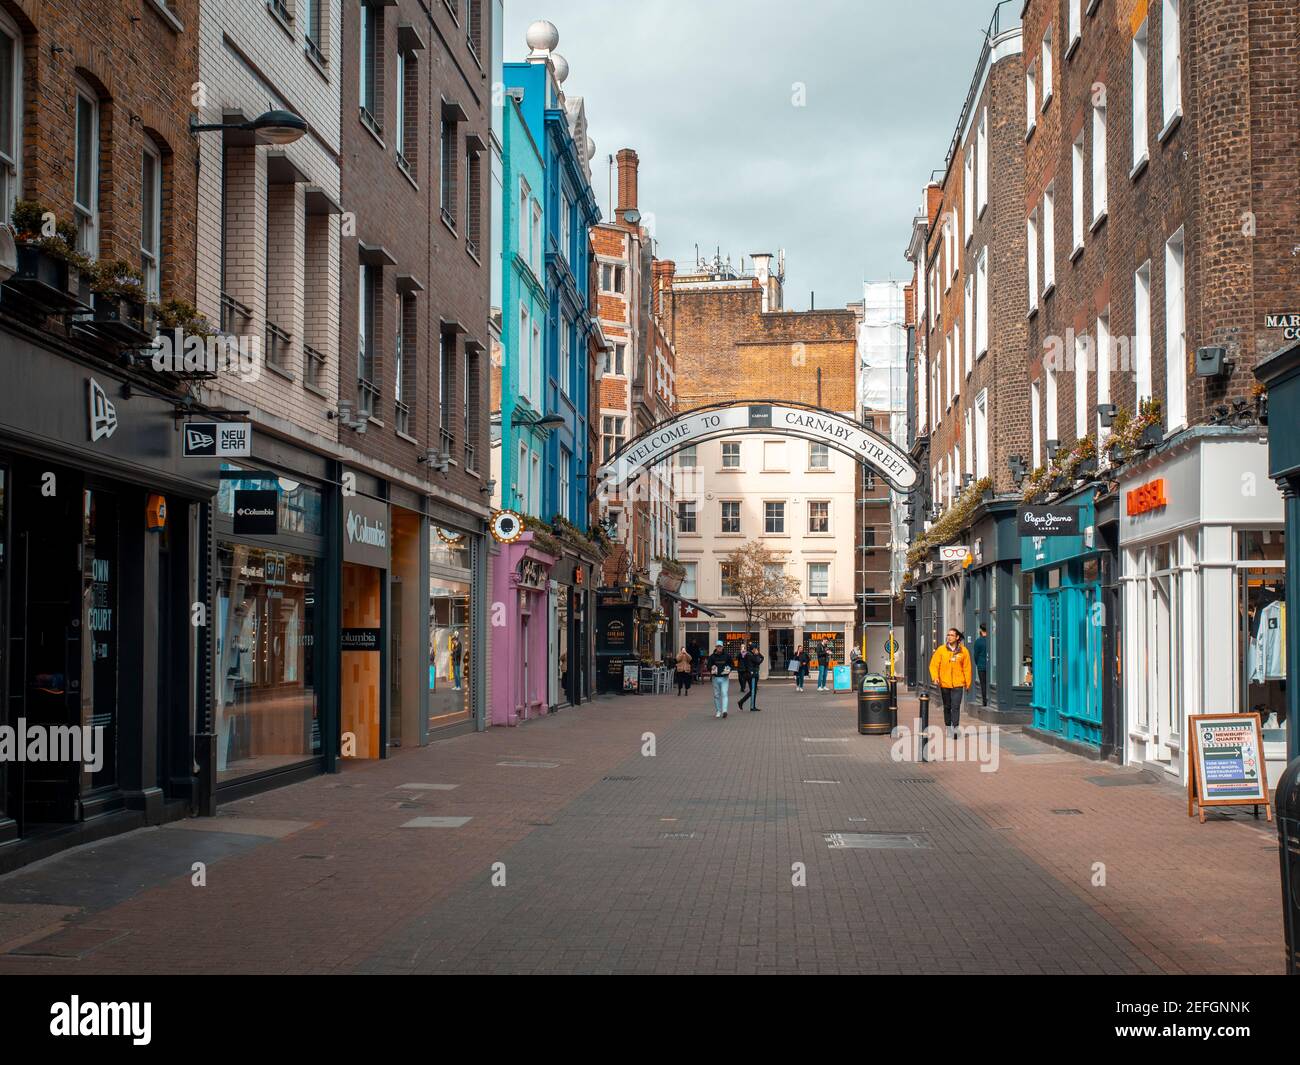 London, England - 17. März 2020: Die Carnaby Street ist leer, weil das Coronavirus Menschen aus öffentlichen Räumen verbietet Stockfoto